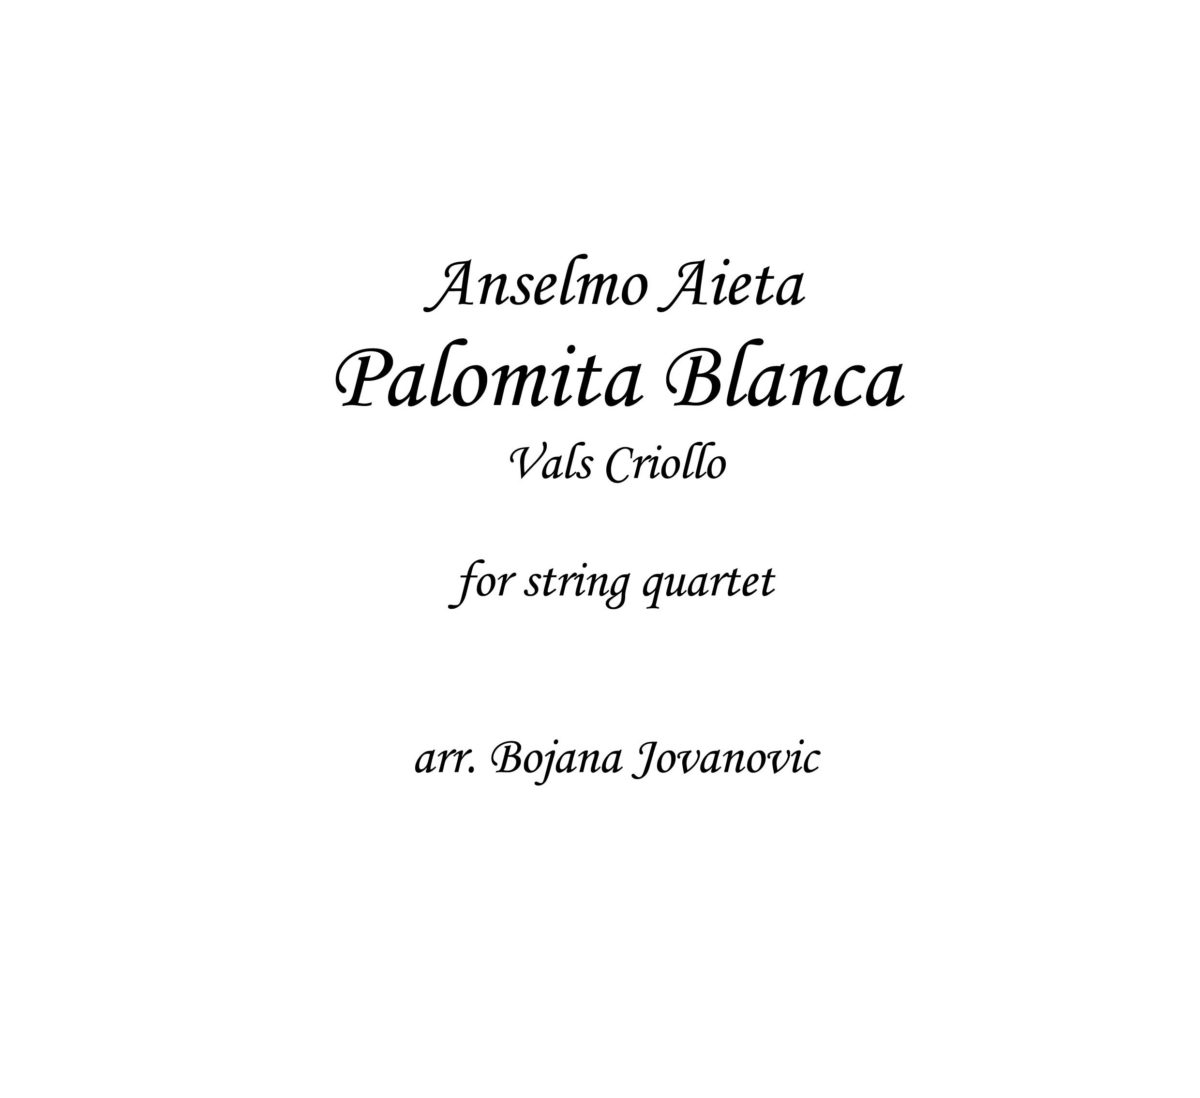 Palomita Blanca (Anselmo Aieta) - Sheet Music